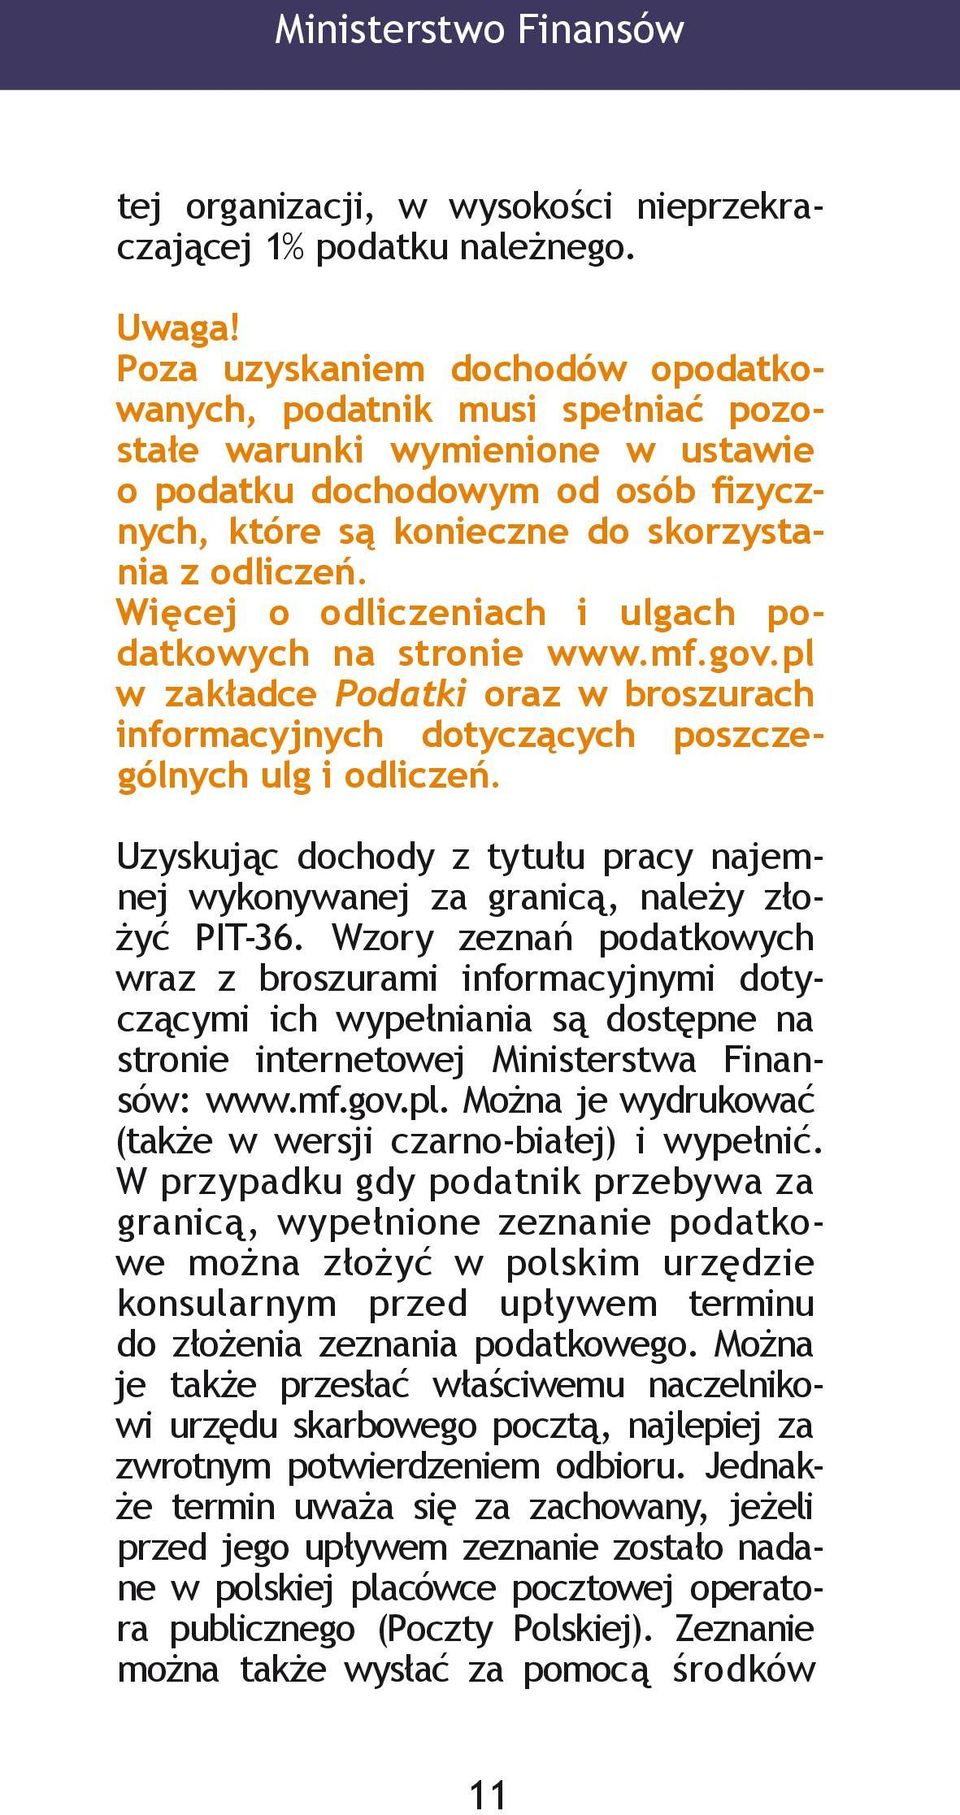 Więcej o odliczeniach i ulgach podatkowych na stronie www.mf.gov.pl w zakładce Podatki oraz w broszurach informacyjnych dotyczących poszczególnych ulg i odliczeń.